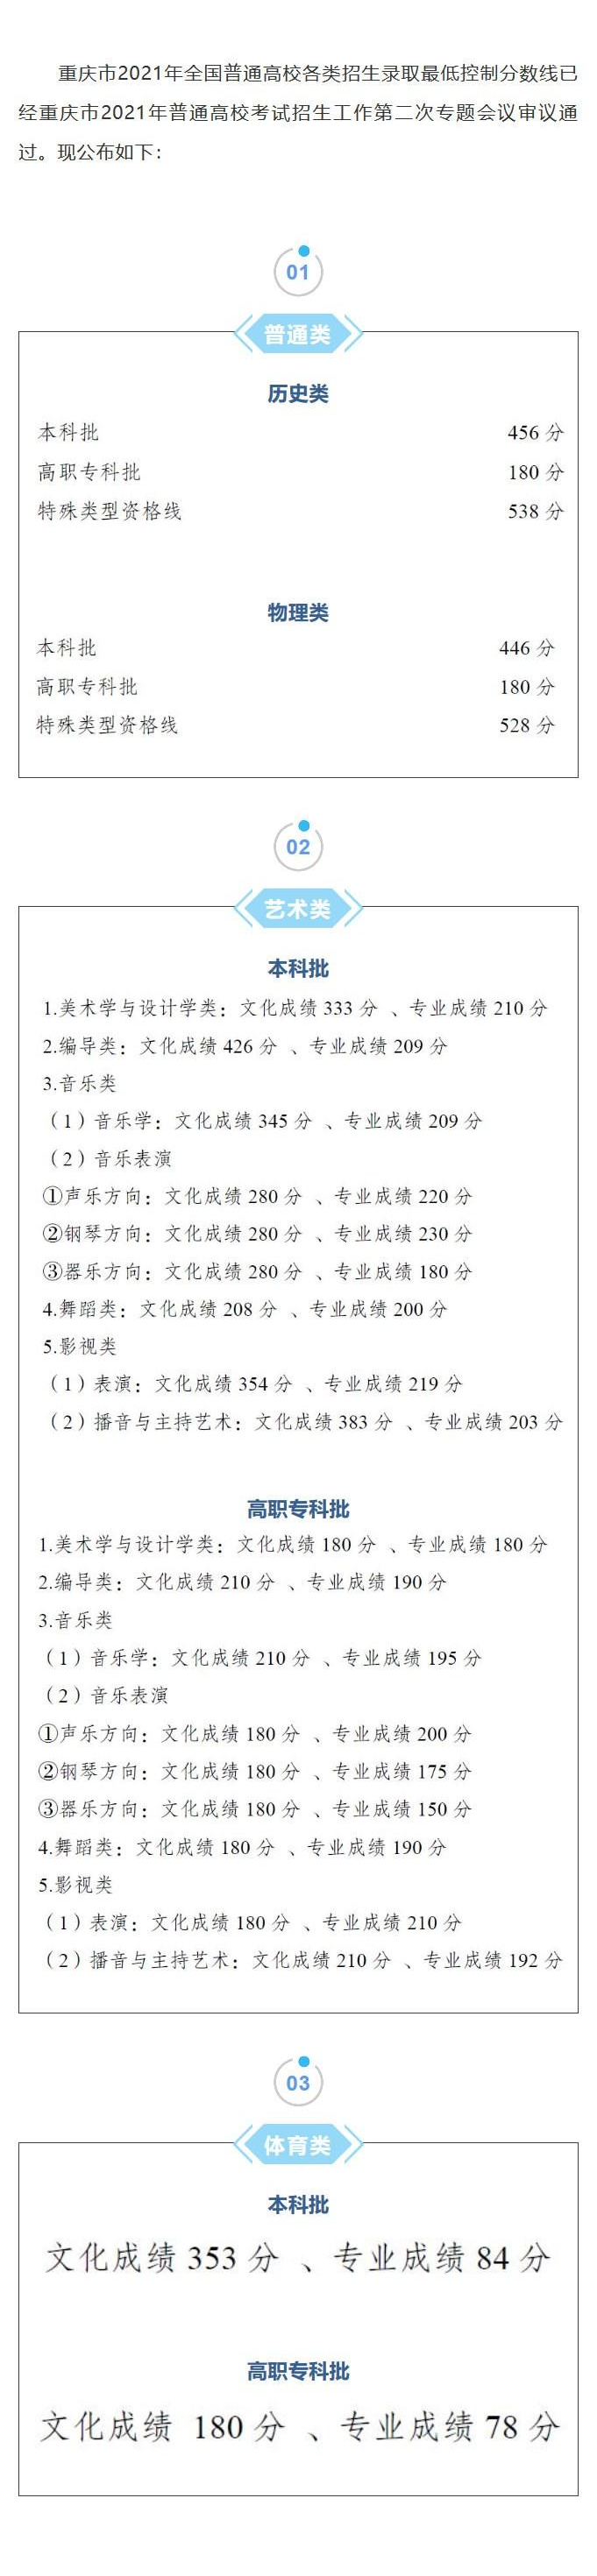 重庆2021年高考分数线公布